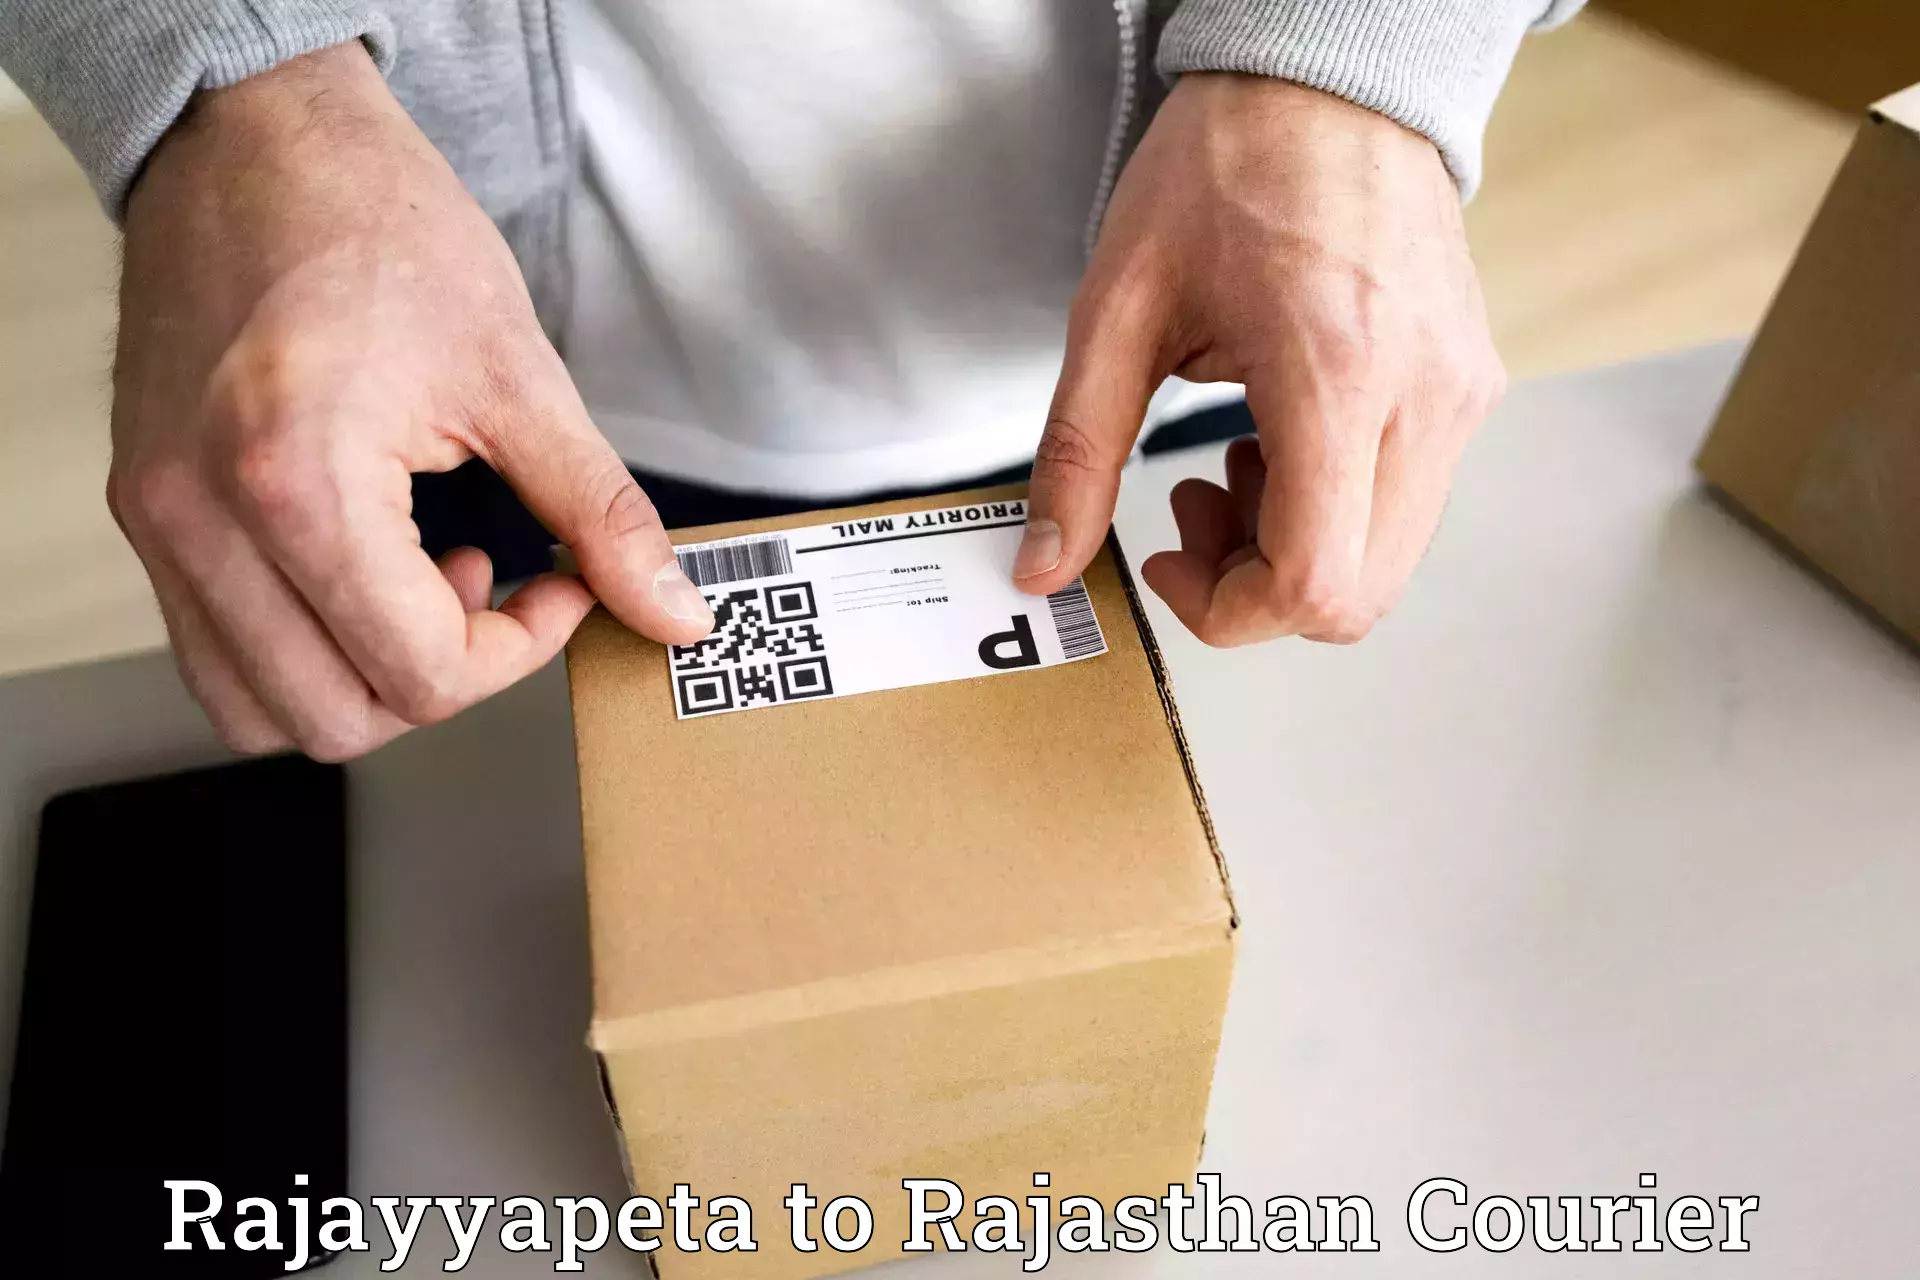 Affordable shipping rates Rajayyapeta to Udaipur